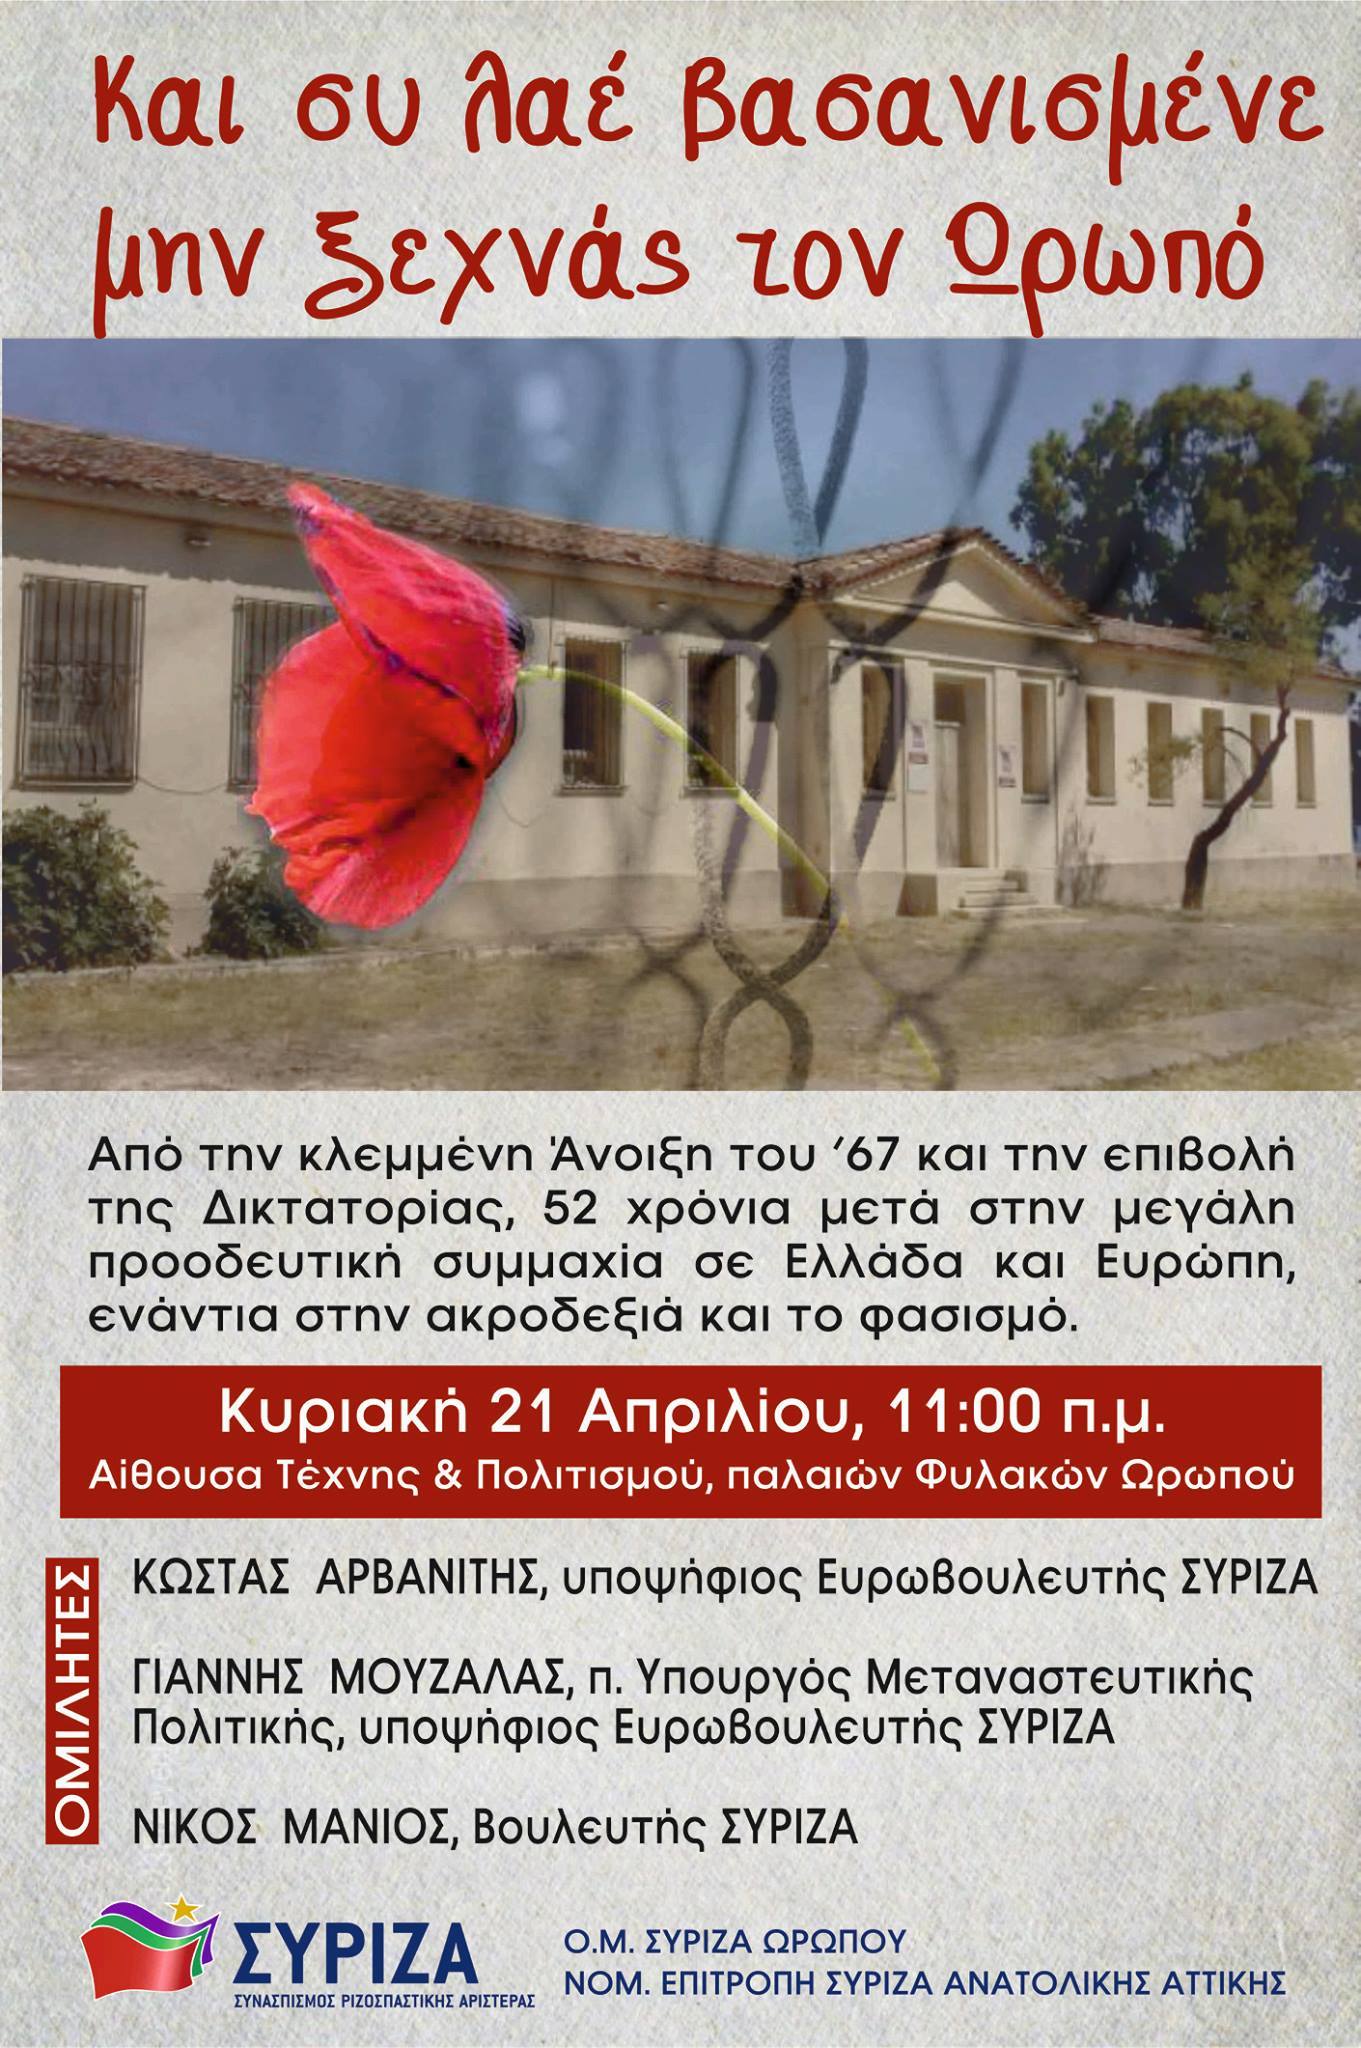 Εκδήλωση της ΟΜ Ωρωπού και της ΝΕ Ανατολικής Αττικής του ΣΥΡΙΖΑ με θέμα «Και συ λαέ βασανισμένε μην ξεχνάς τον Ωρωπό»